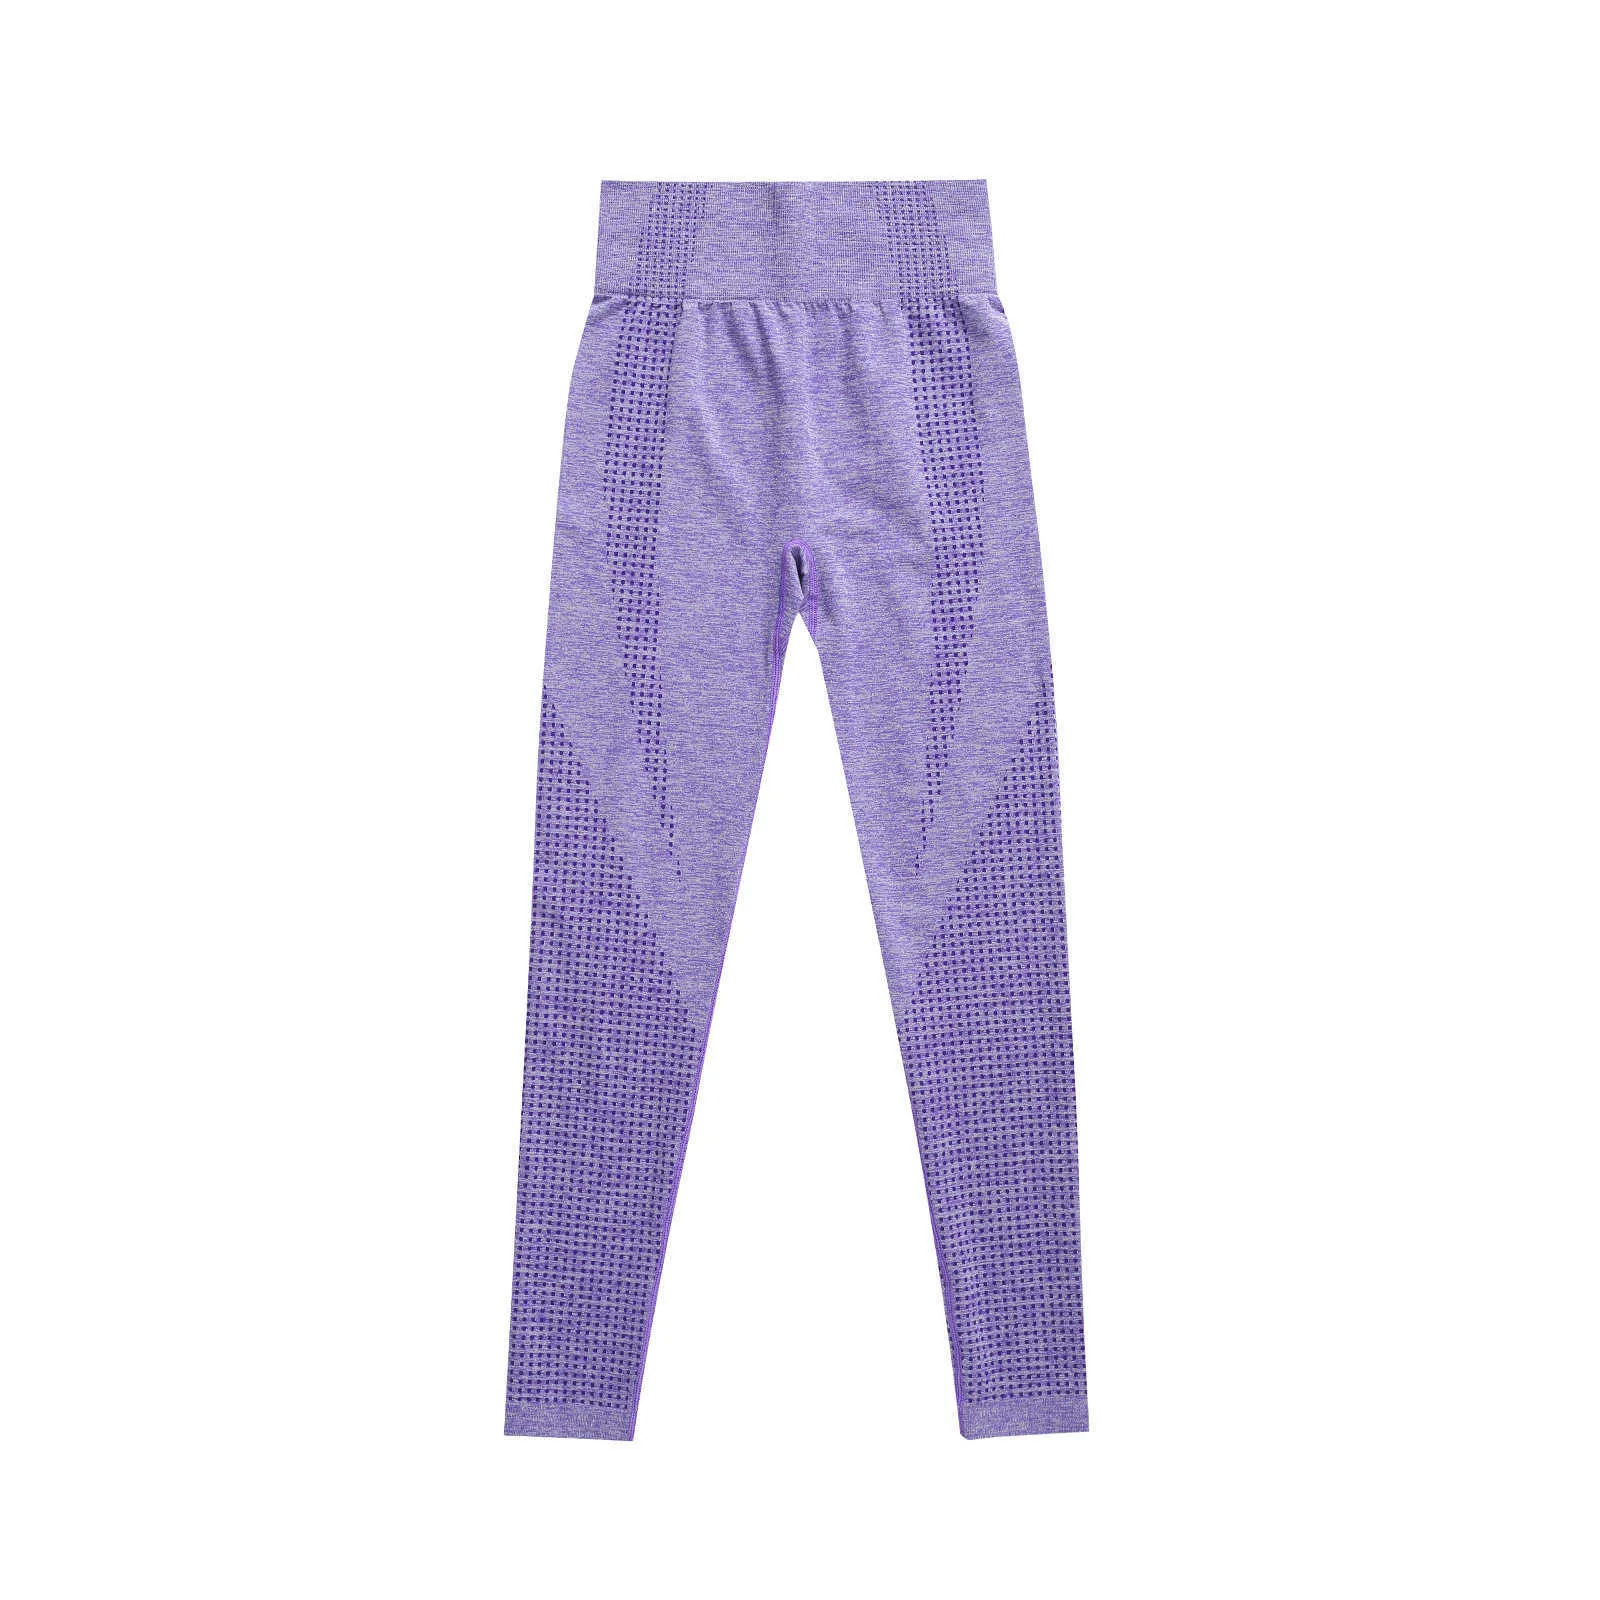 Peachy Lavender leggings – Fit Peach Athletics